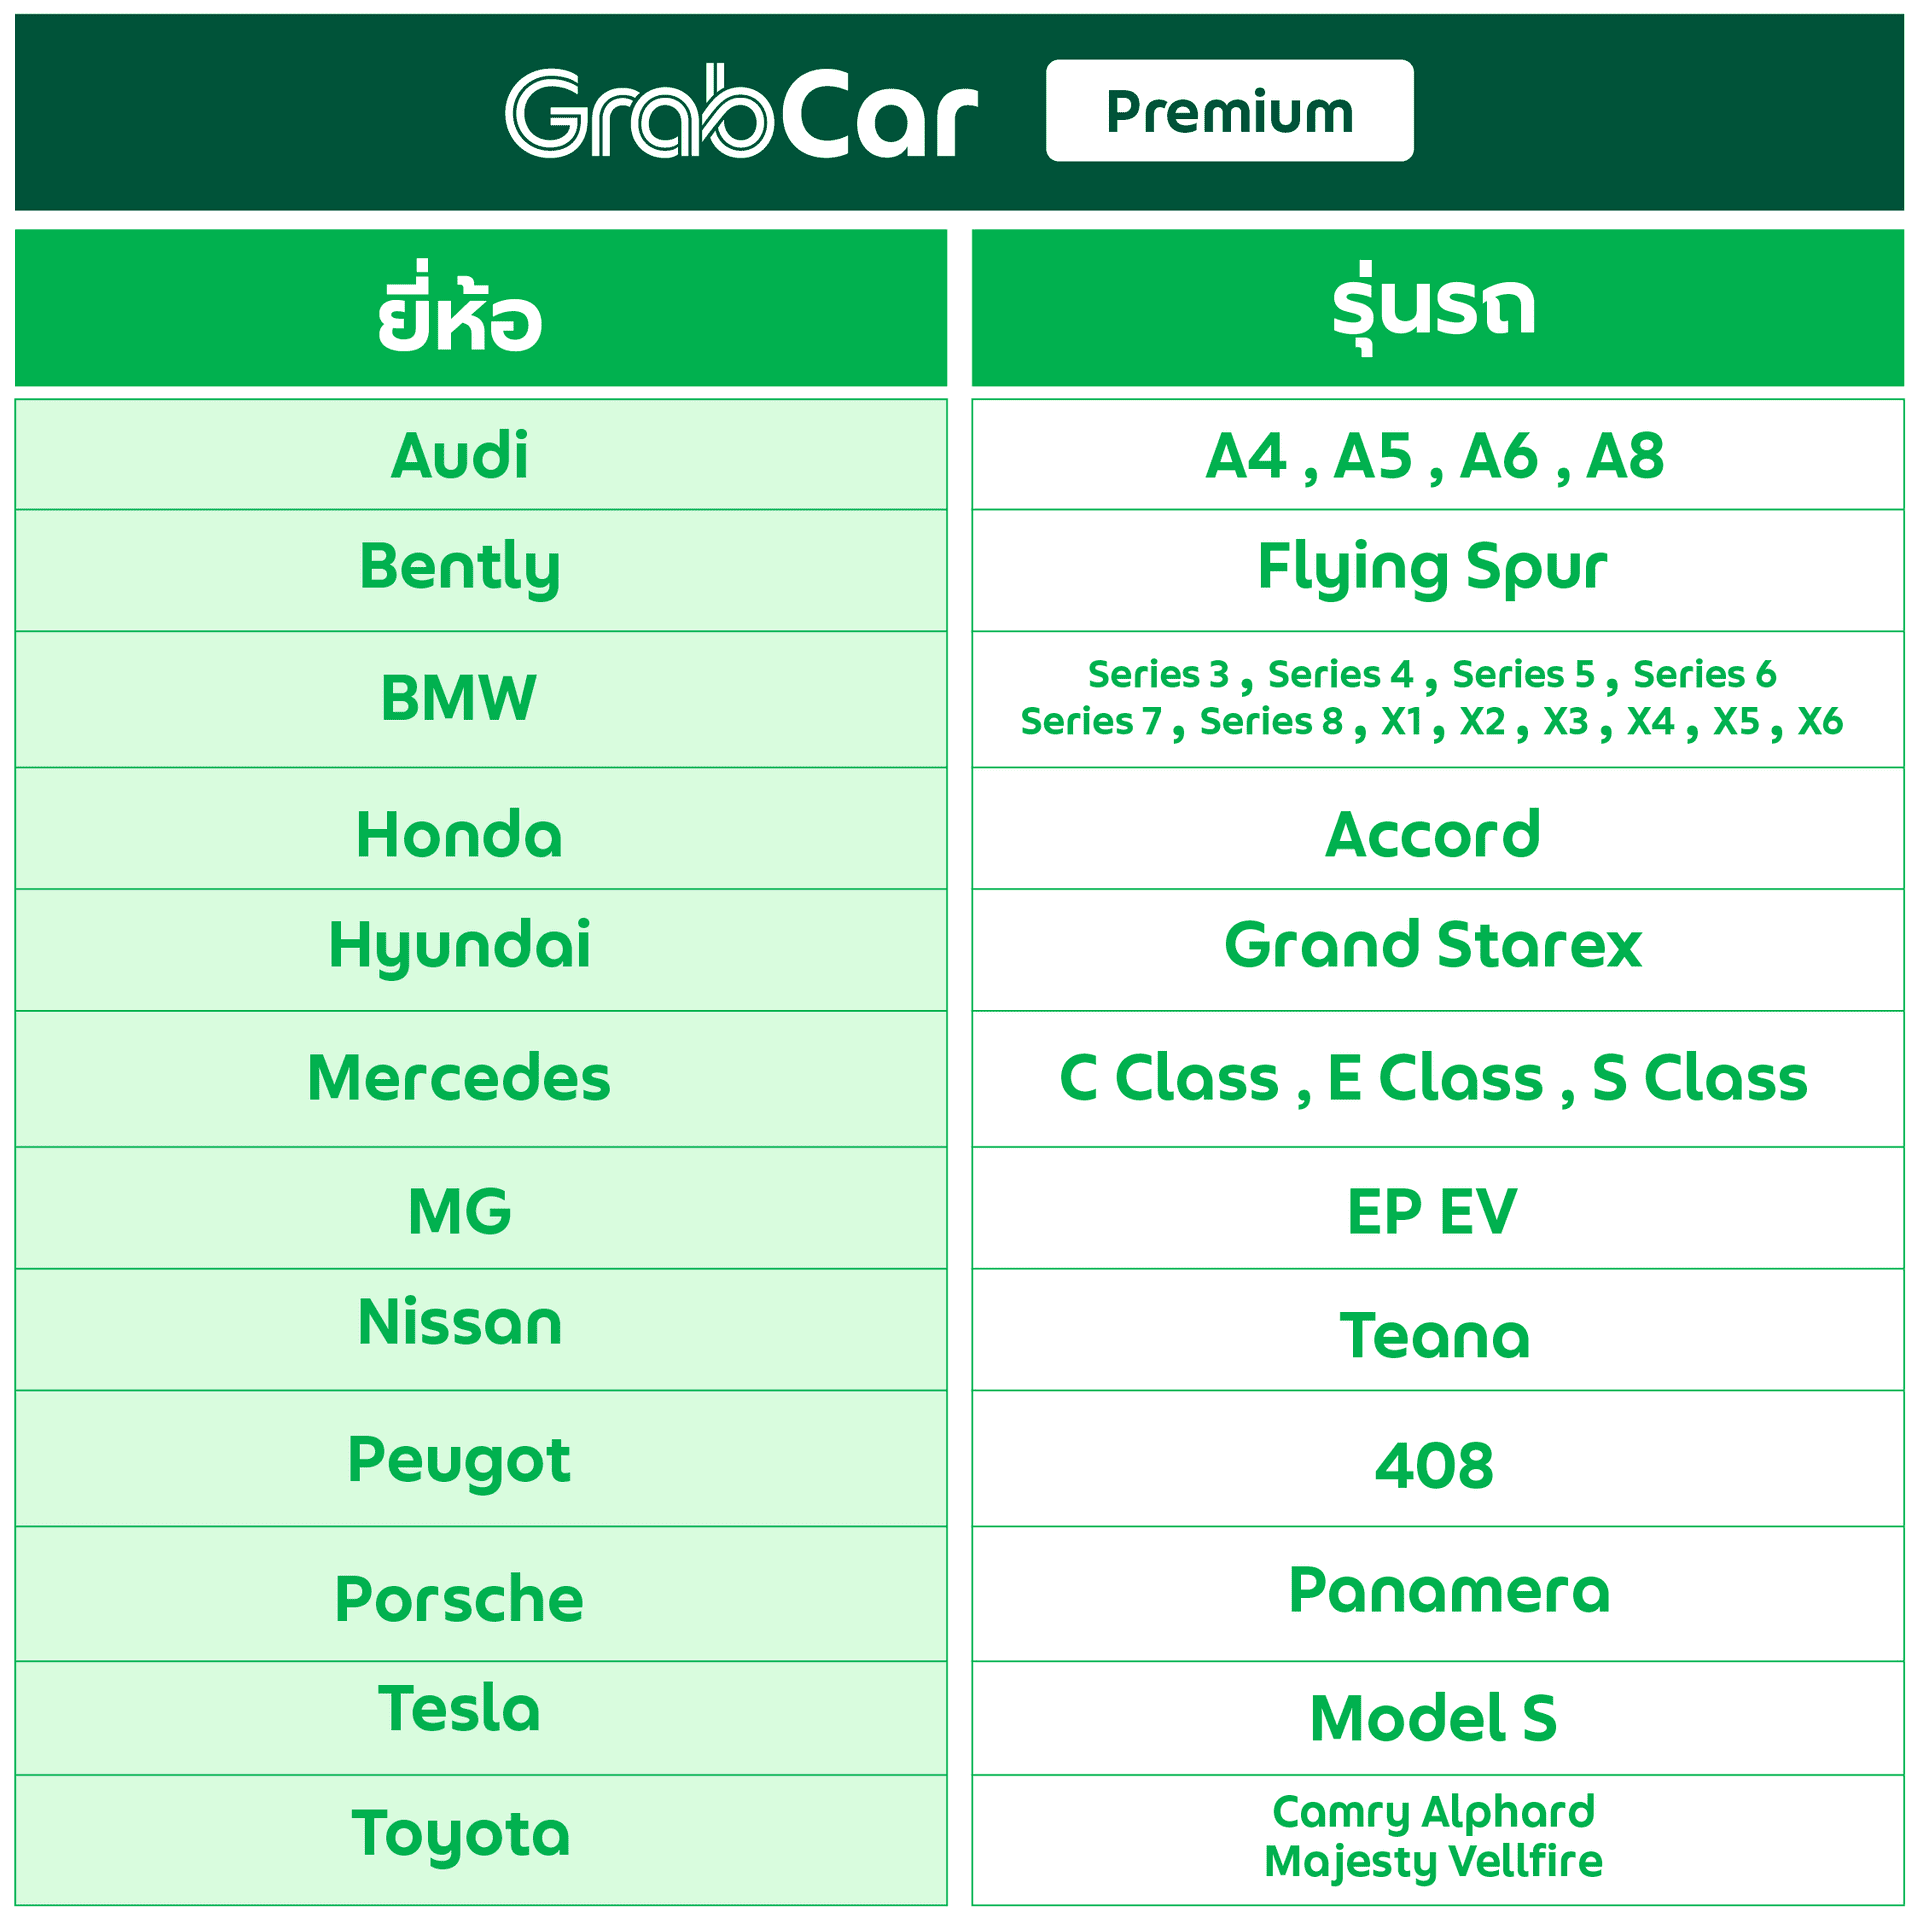 ขับ GrabCar Premiumใช้รถอะไรได้บ้าง